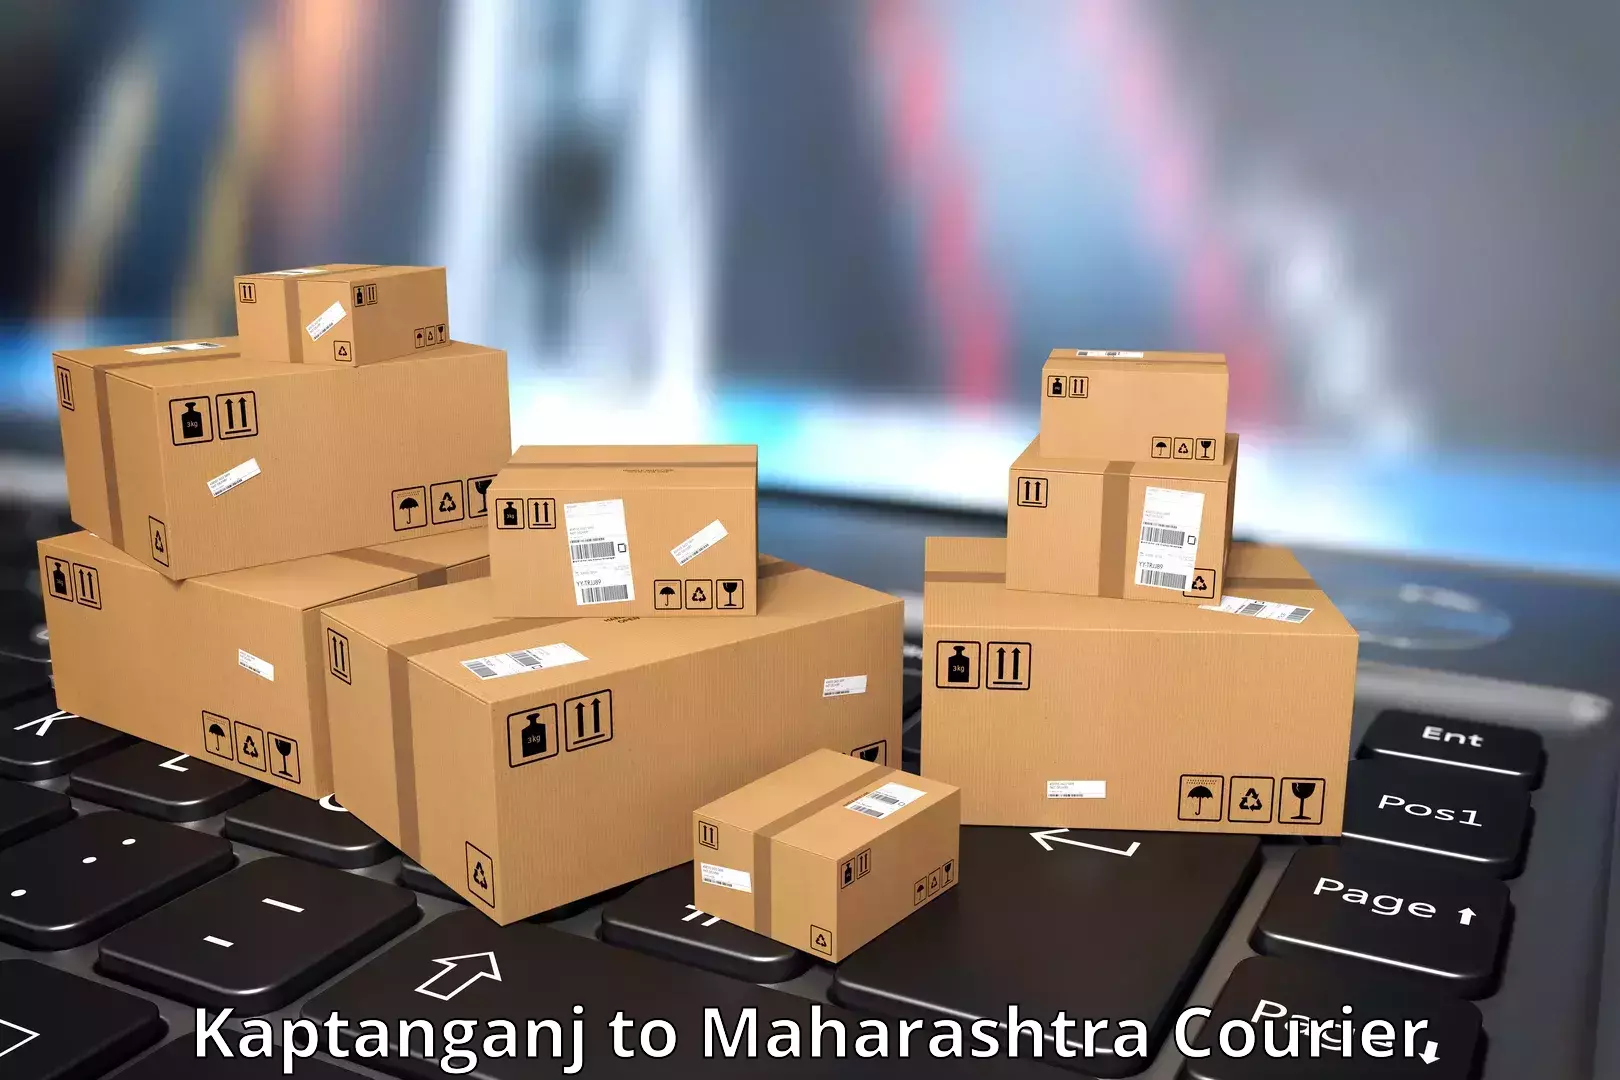 Tech-enabled shipping Kaptanganj to Sindhudurg